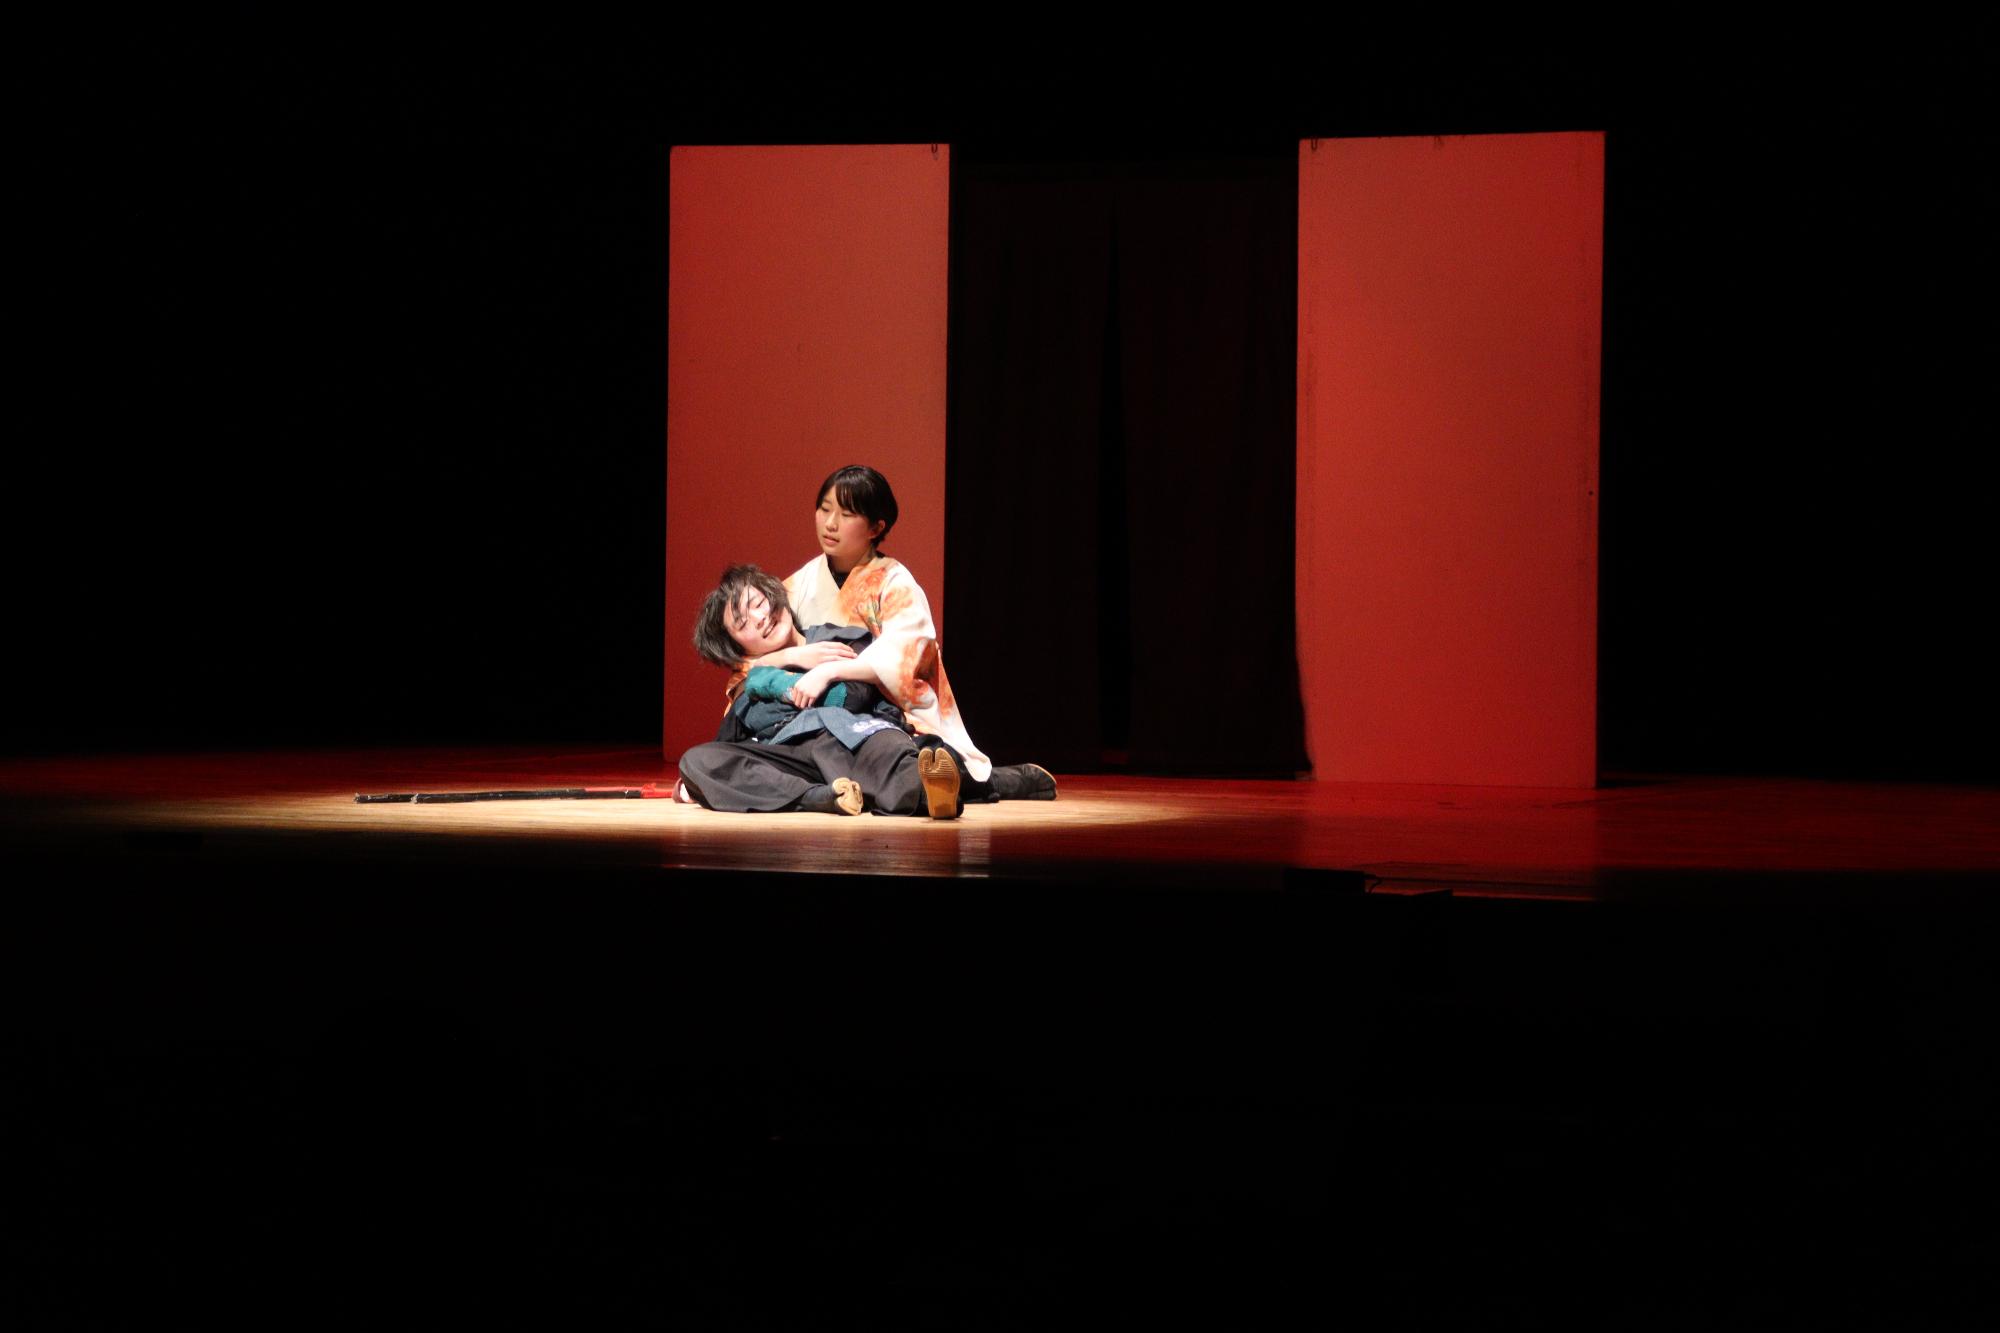 長野南高校演劇部による「竜馬、あるいは幕末の人造人間（竜と怪物改題）」のシーンの一部。倒れた竜馬を一人が支えているシーン。